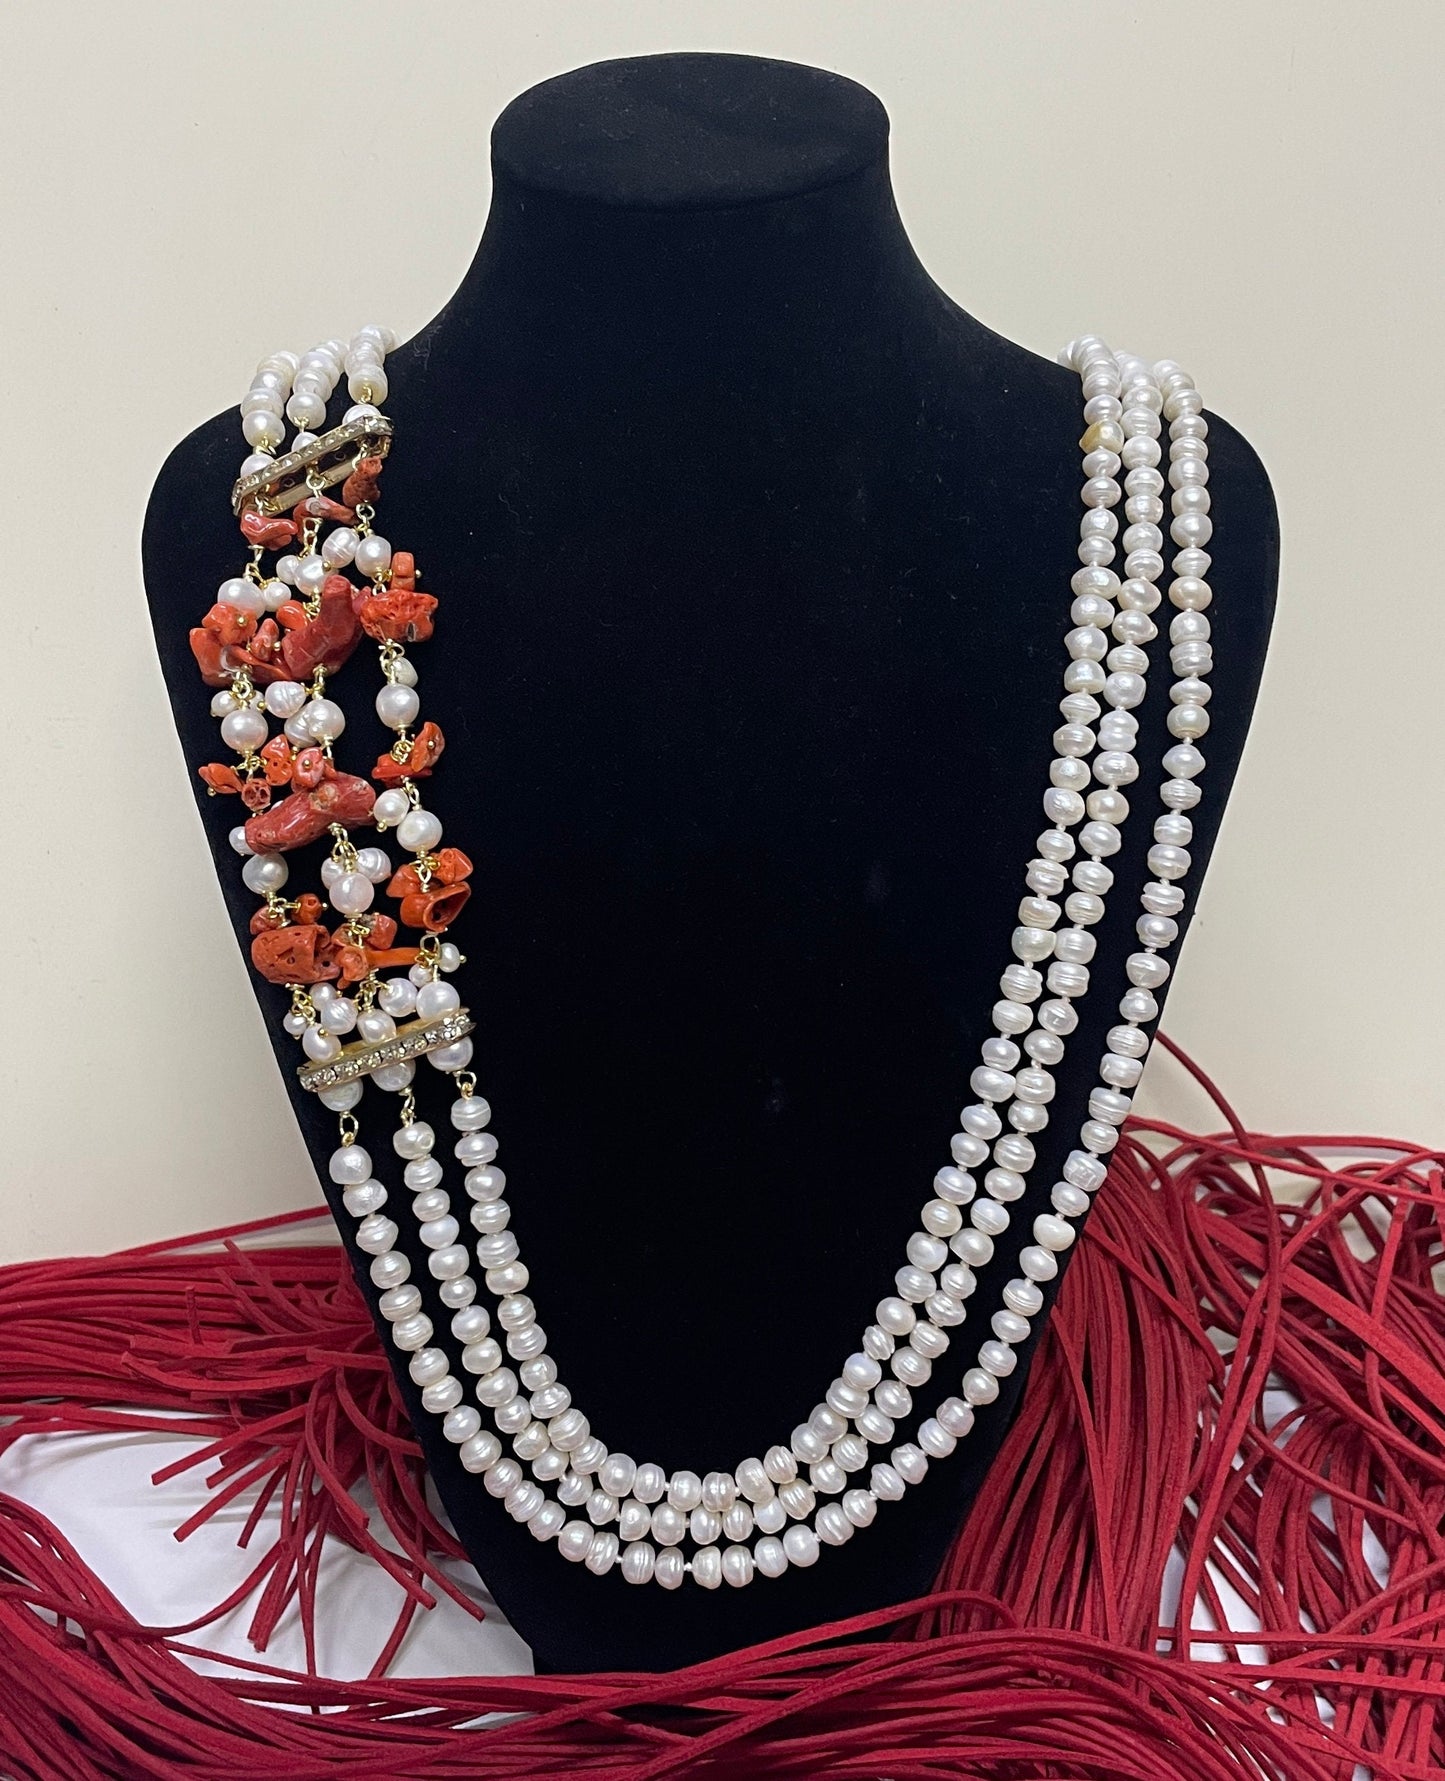 Collana Corallo e perle, Collana con perle di fiume, Corallo naturale del Mediterraneo, collana maxi, regalo sposa, collana boho.)